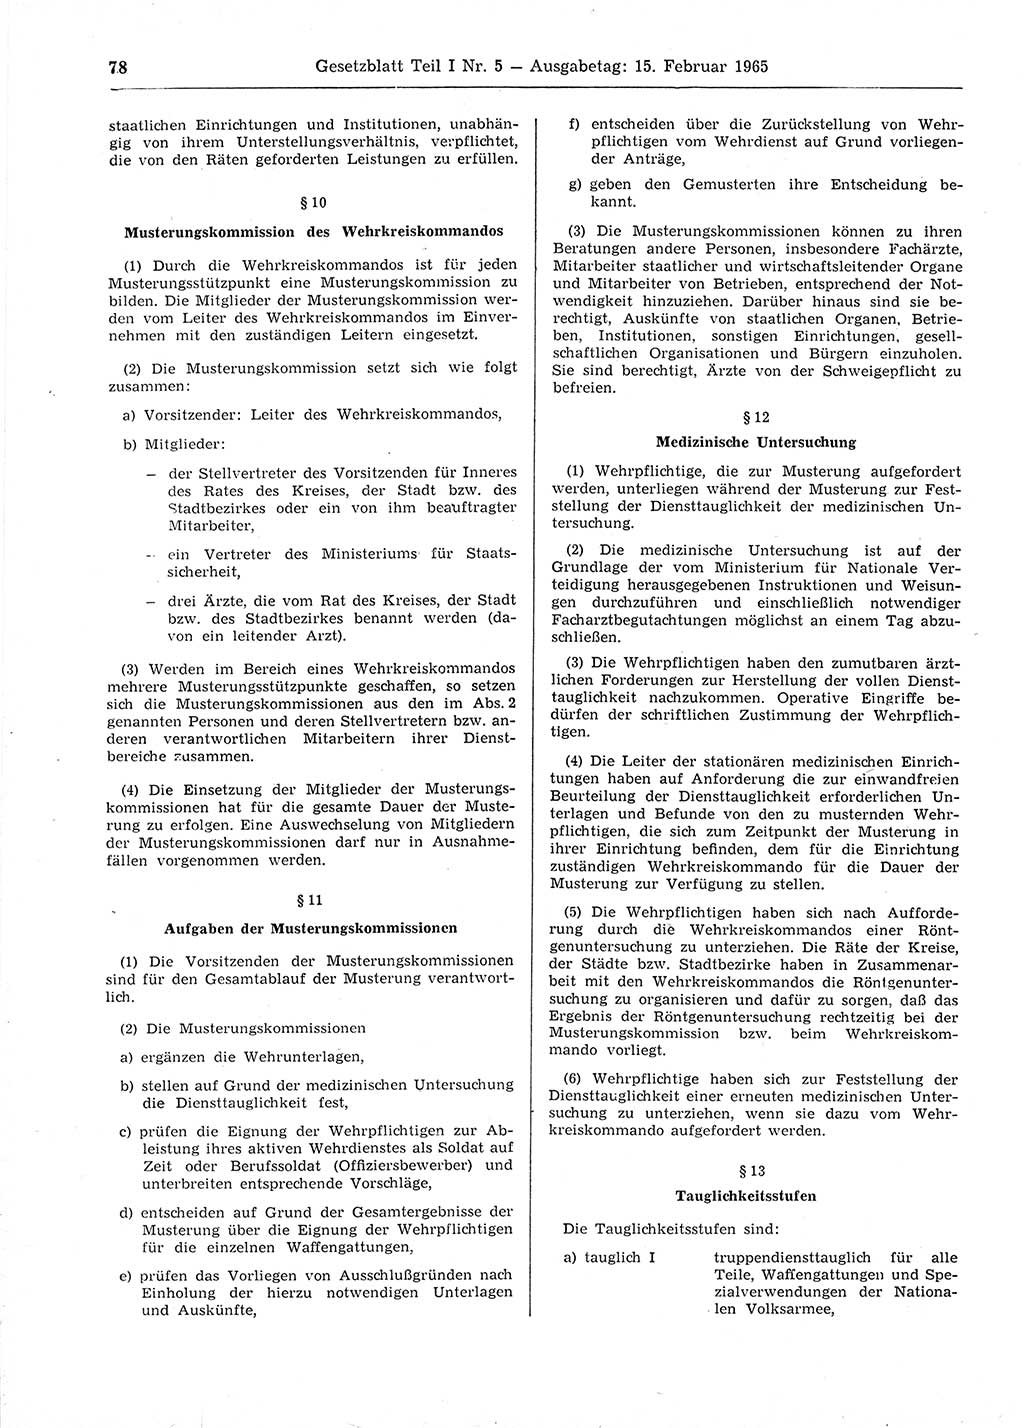 Gesetzblatt (GBl.) der Deutschen Demokratischen Republik (DDR) Teil Ⅰ 1965, Seite 78 (GBl. DDR Ⅰ 1965, S. 78)